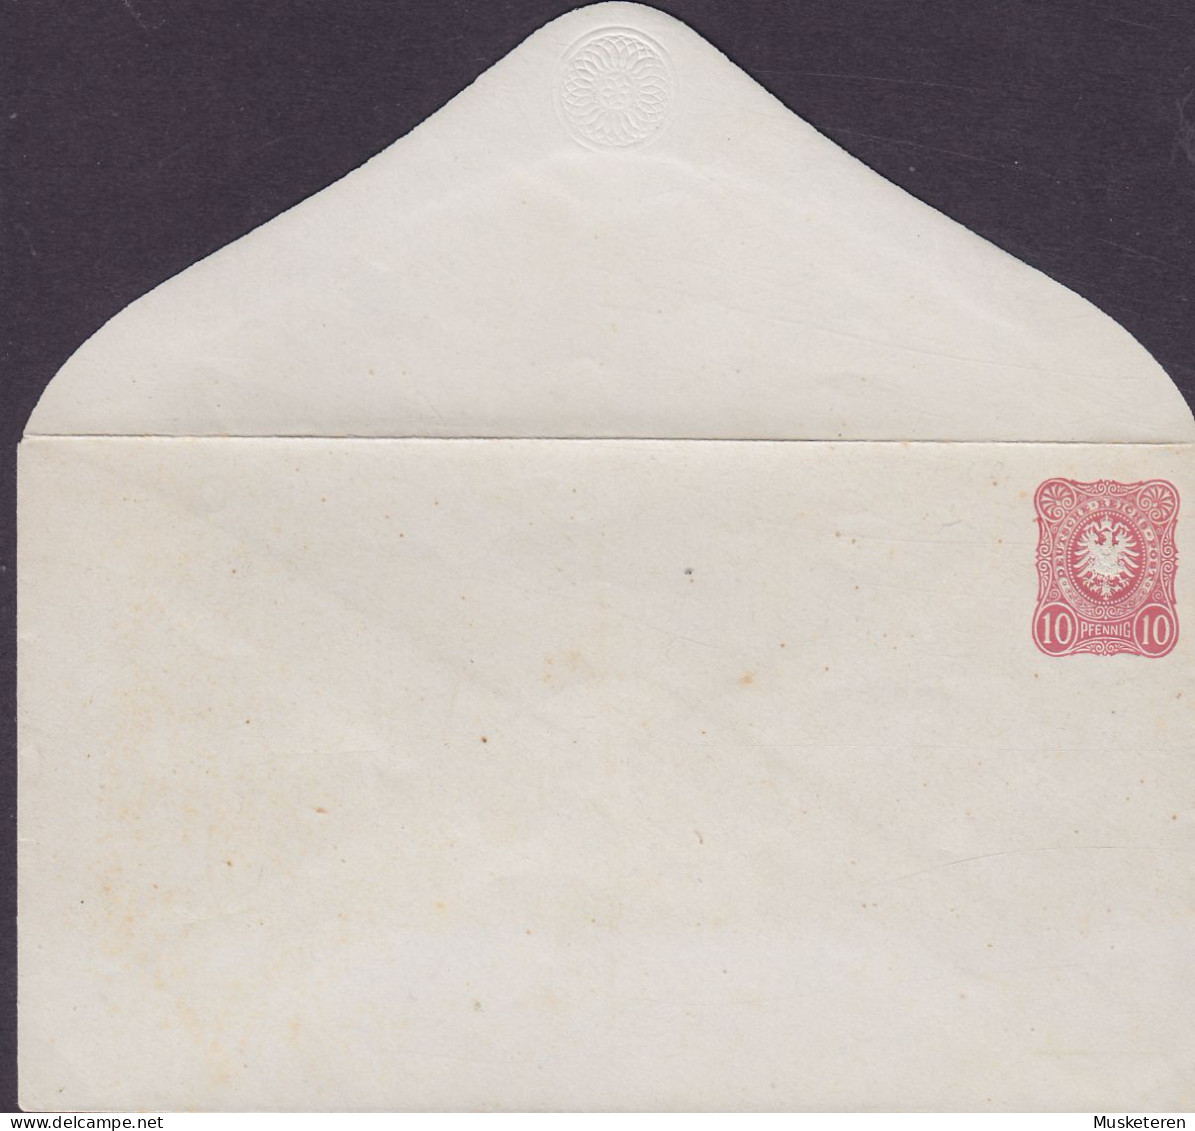 Deutsche Reichspost Postal Stationery Ganzsache Entier Umschlag 1876, 10 Pf. Prägedruck Adler Eagle (Unused) (2 Scans) - Covers